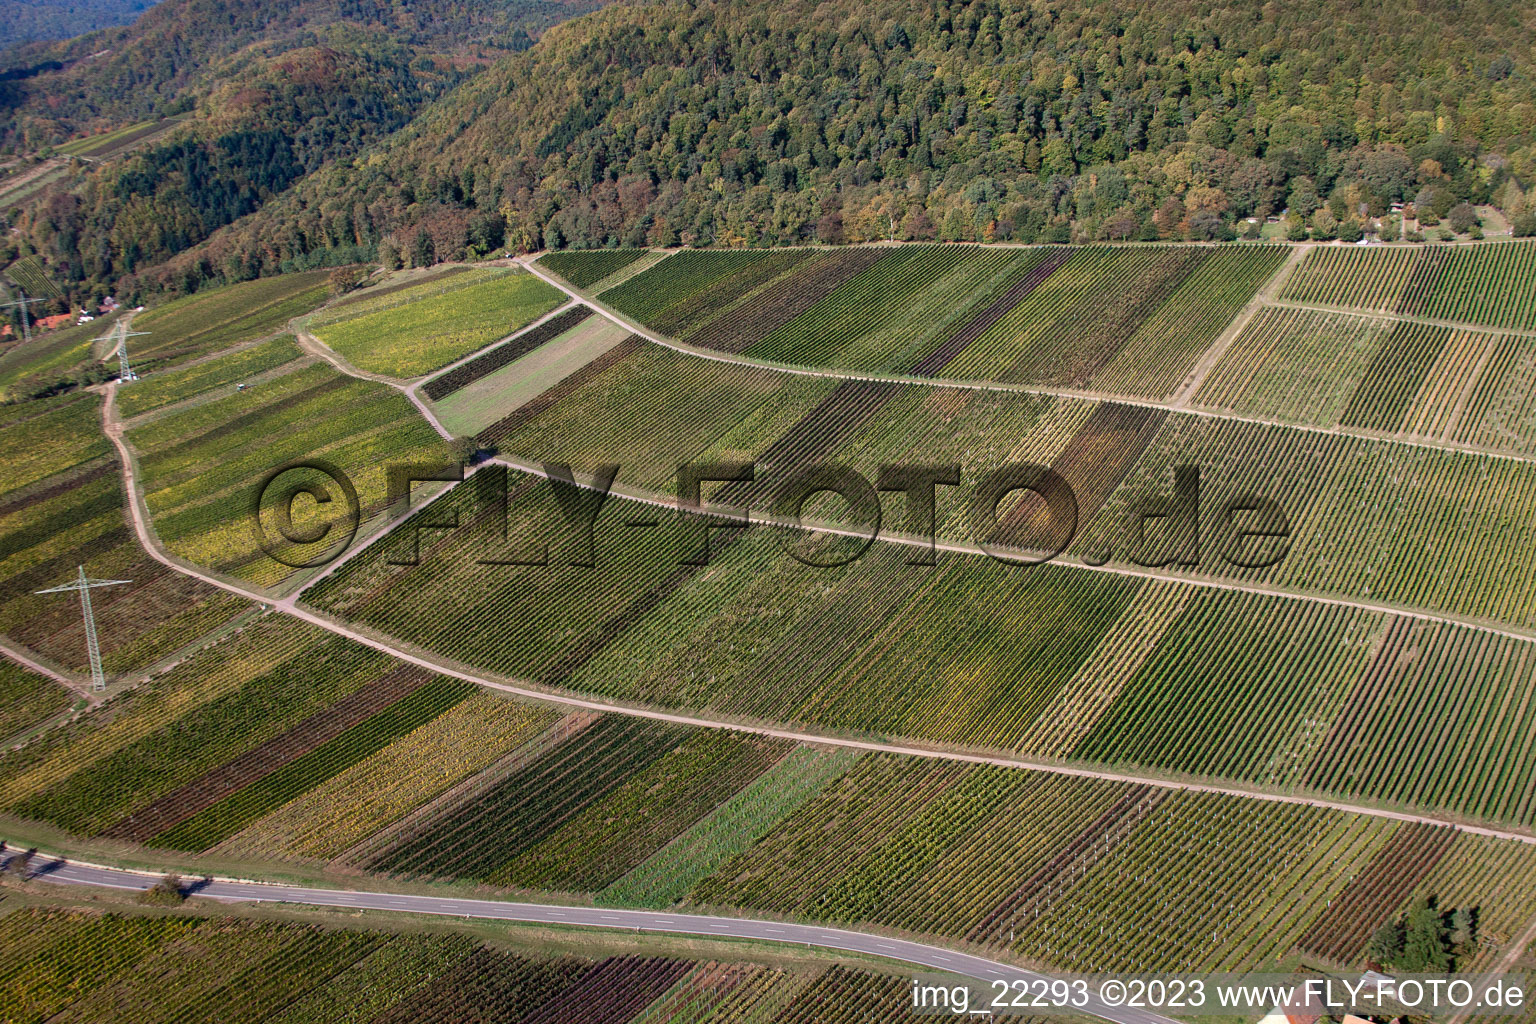 Albersweiler im Bundesland Rheinland-Pfalz, Deutschland aus der Drohnenperspektive